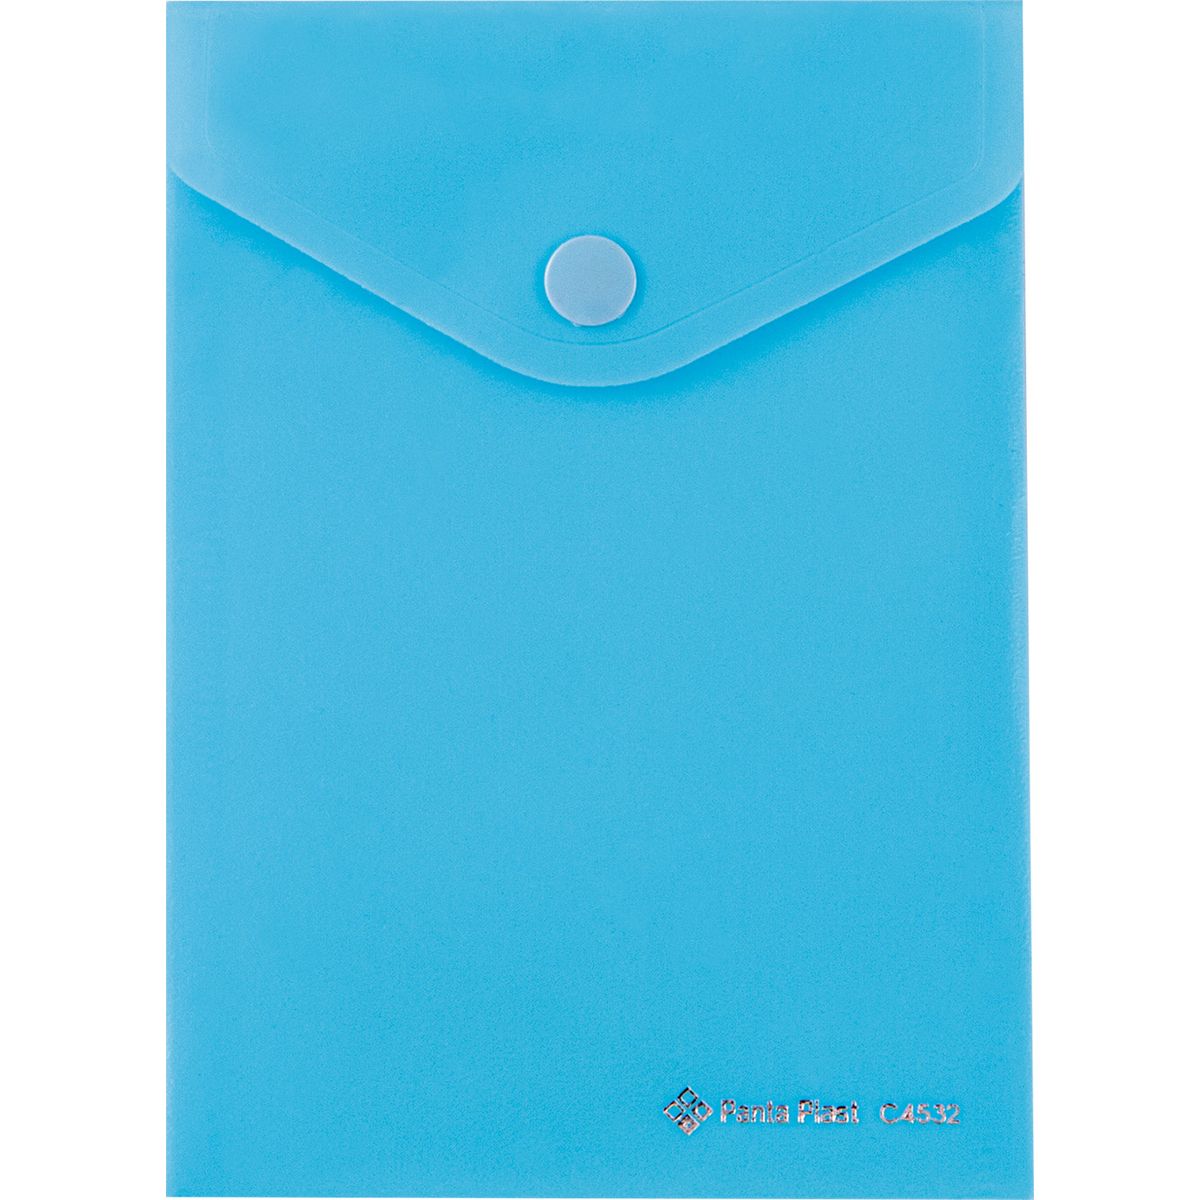 Teczka plastikowa na zatrzask A6 niebieski Panta Plast (0410-0052-03)